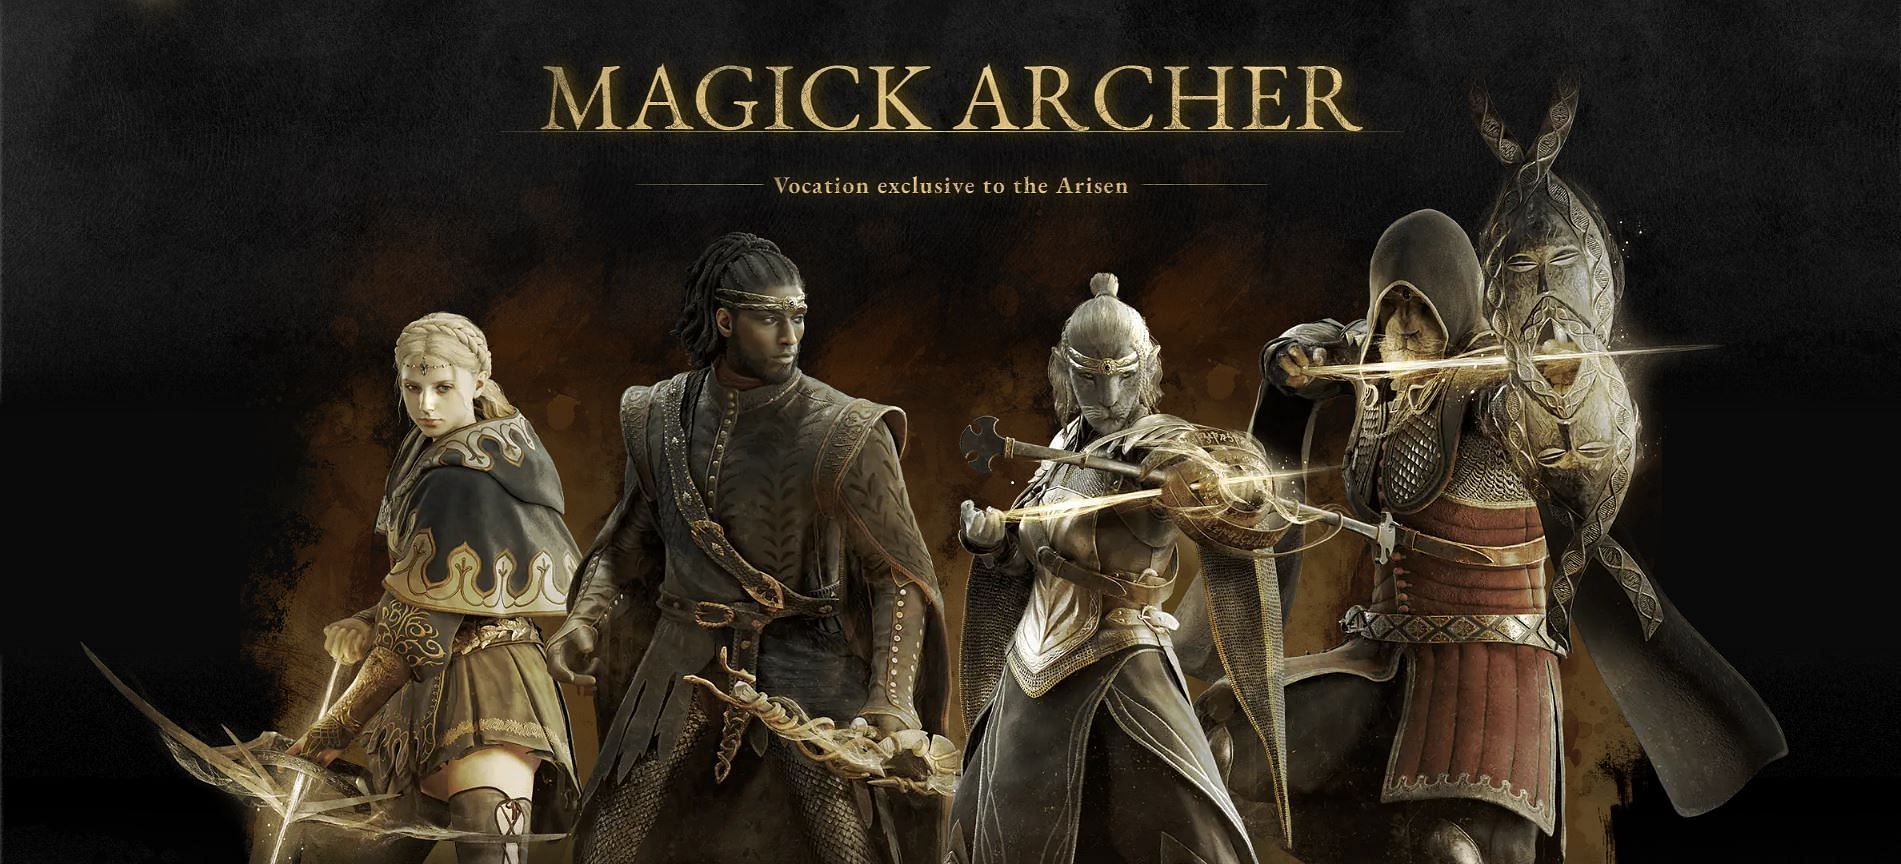 Magick Archer Vocation (Image via Capcom)